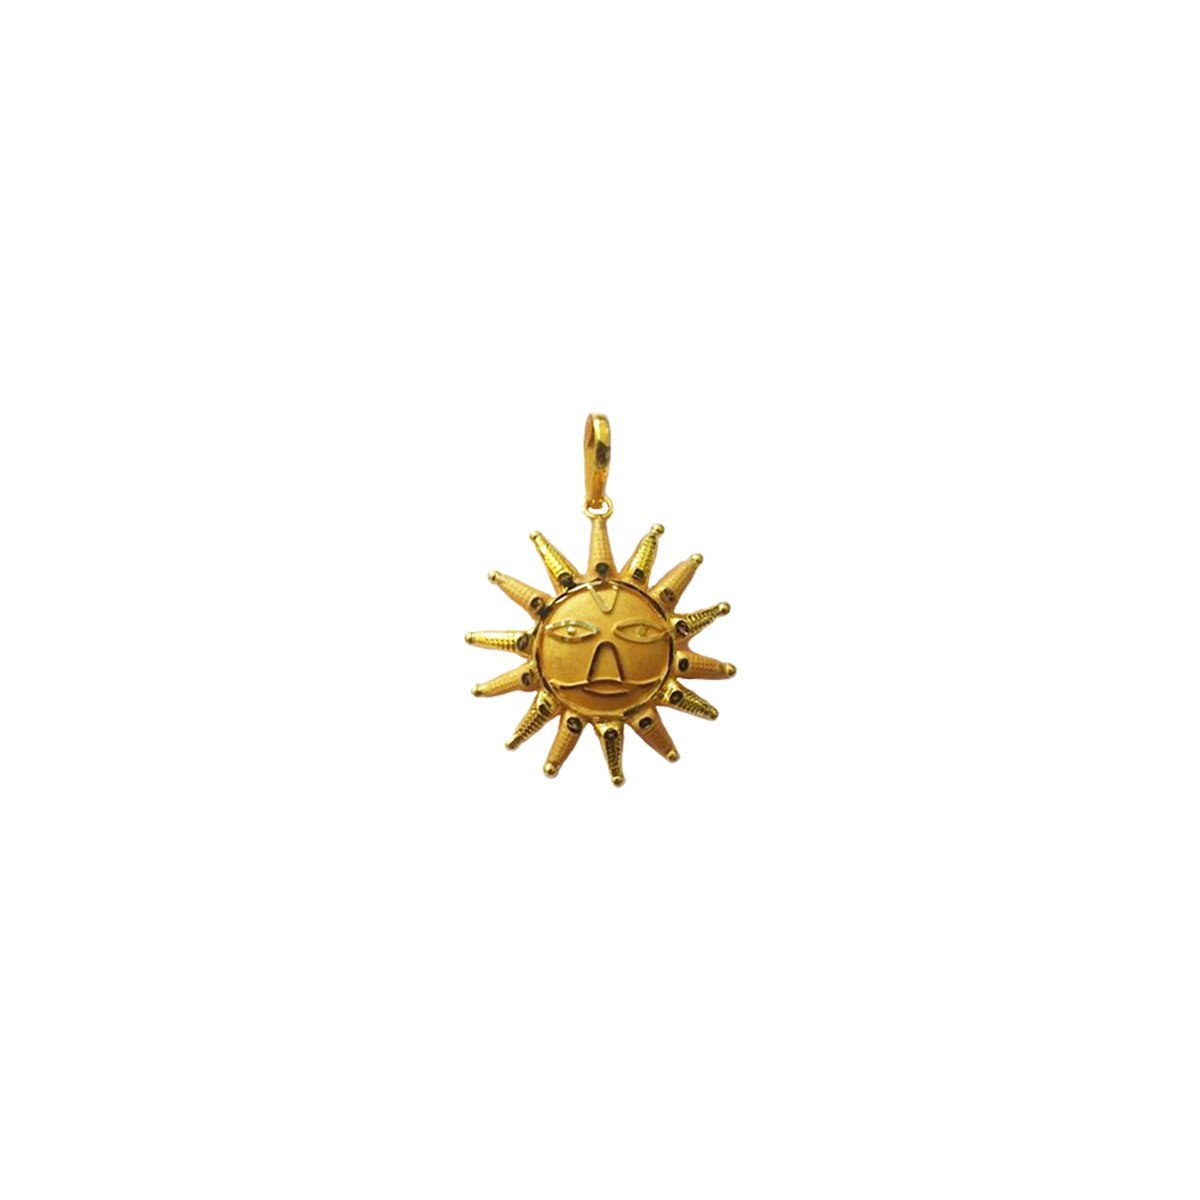 Buy Gold Sun Necklace, Gold Necklace, Sunshine Necklace, Minimalist Necklace,  Dainty Necklace, Delicate Gold Necklace, Simple Gold Necklace Online in  India - Etsy